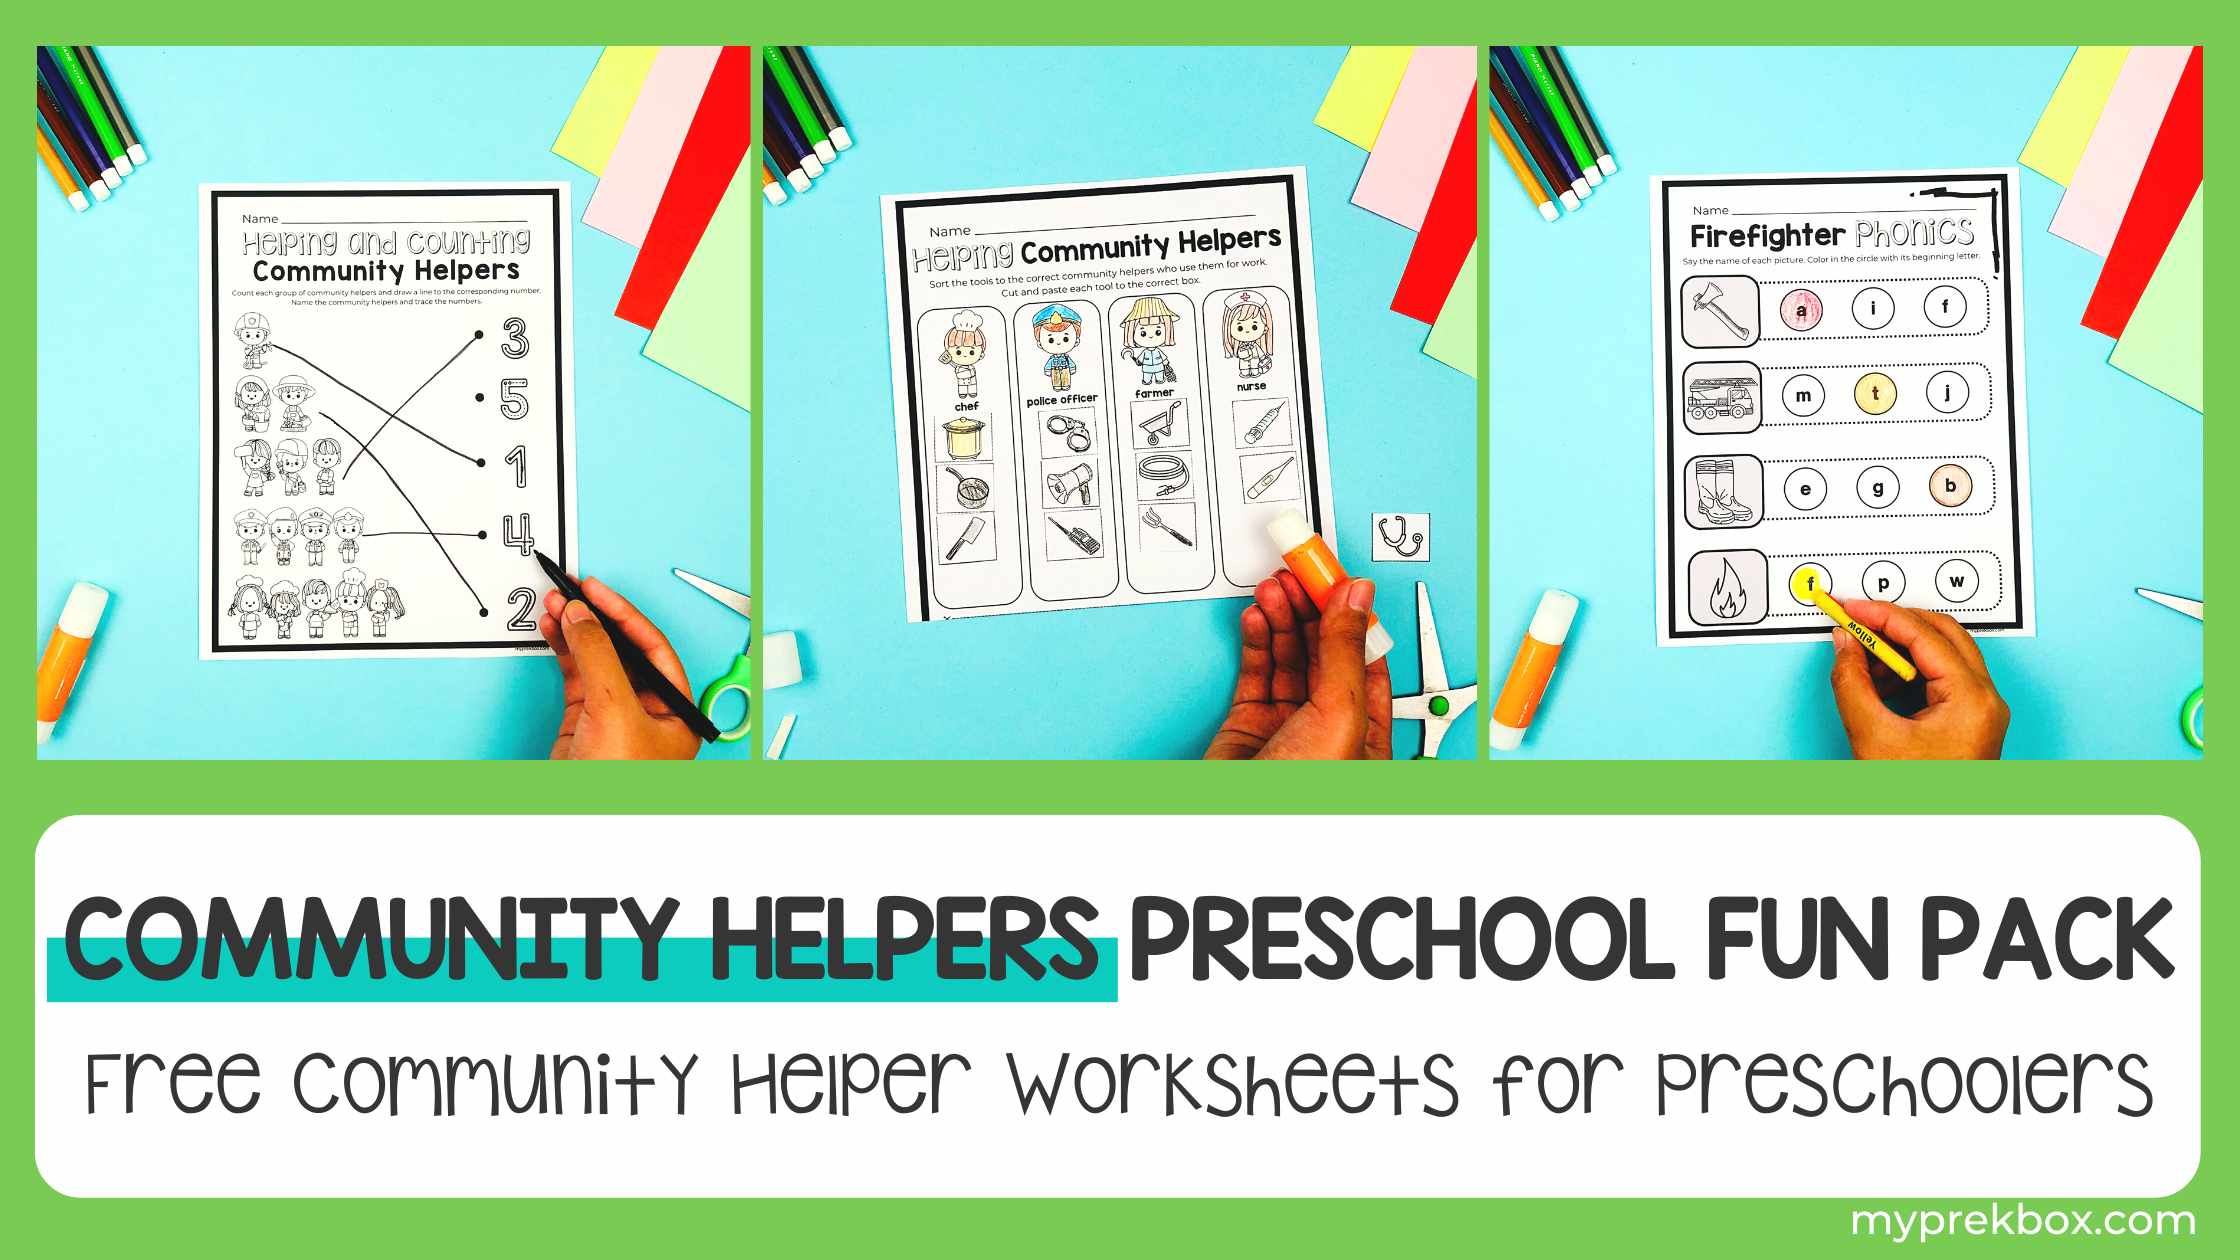 Community Helpers Preschool Fun Pack: Free Community Helper Worksheets for Preschoolers  